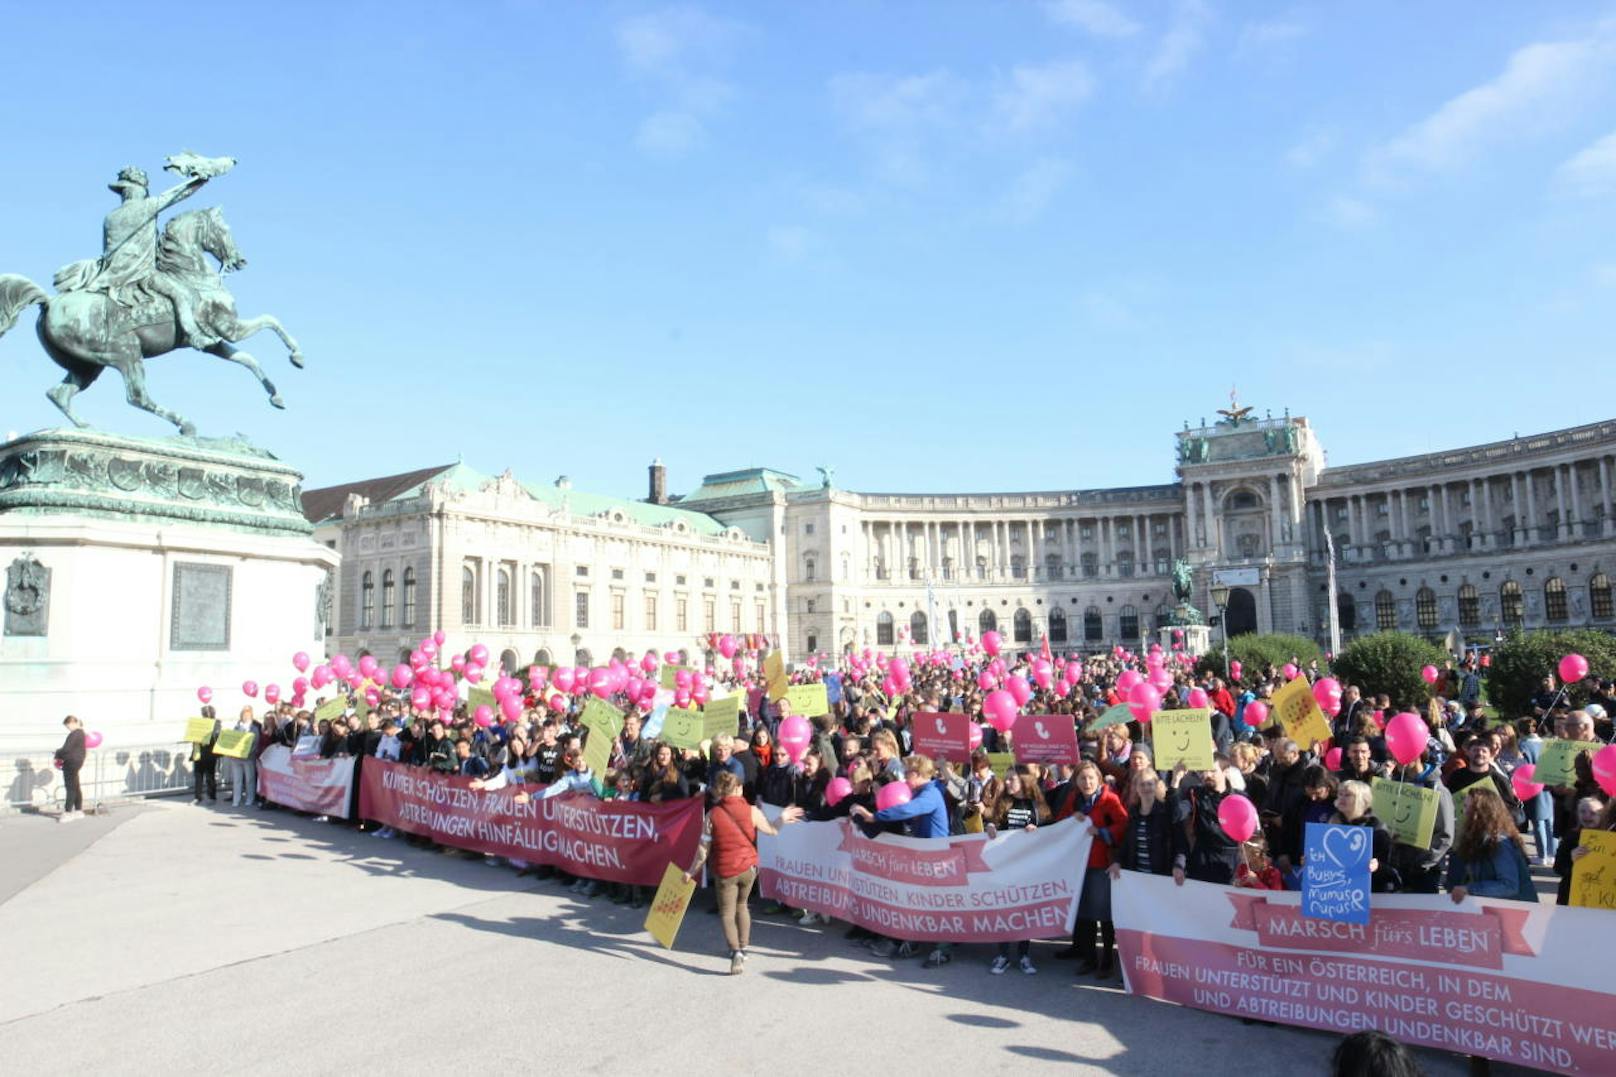 Am Sonntag fand in der Wiener Innenstadt der "Marsch fürs Leben" statt, an dem rund 1600 Personen teilnahmen (Credit: Josef Büchsenmeister).